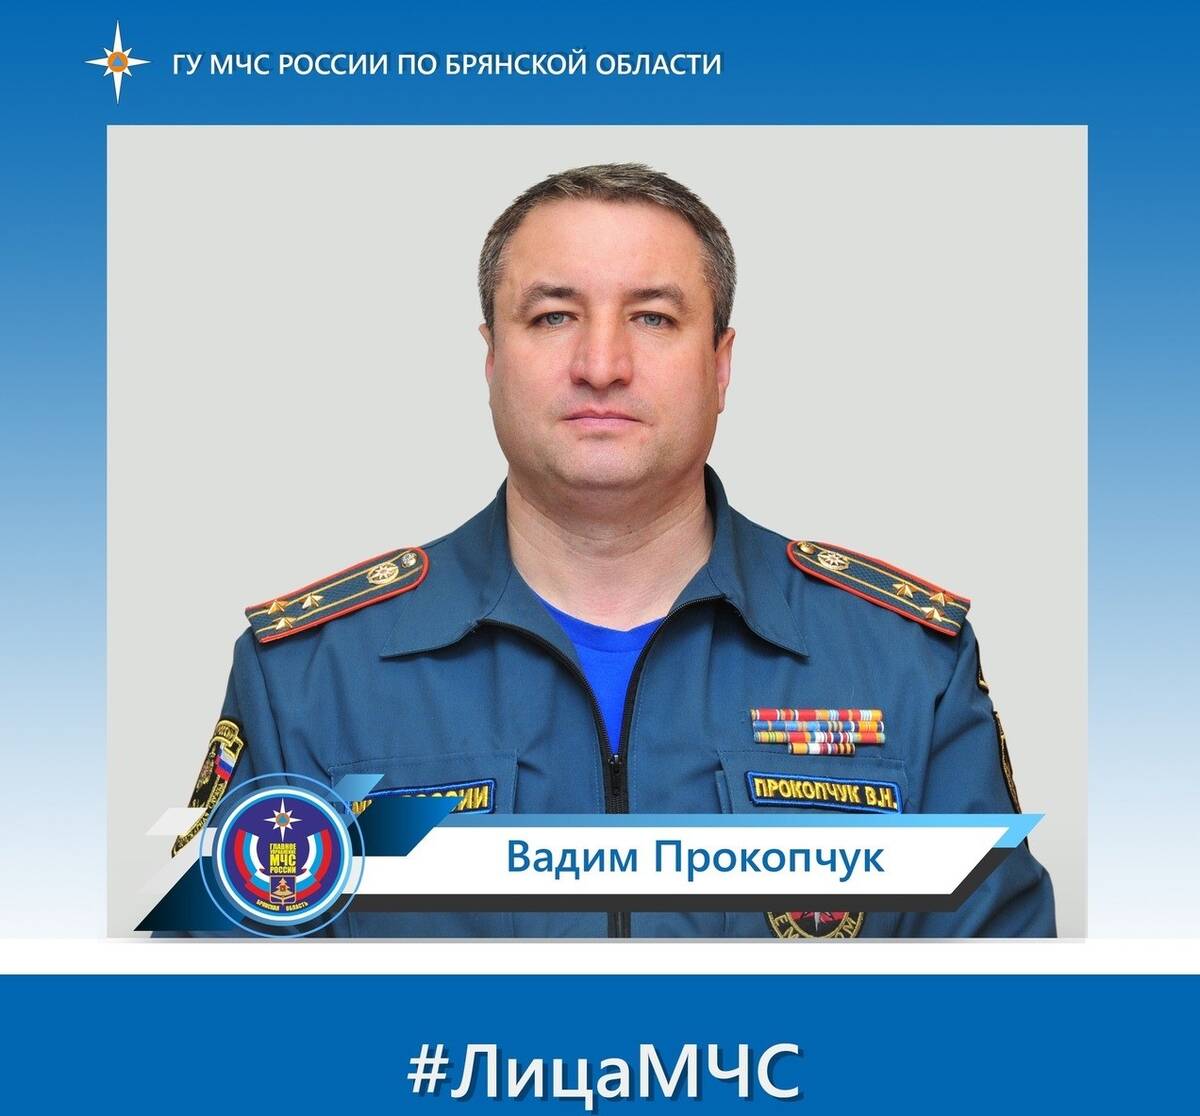 Начальник Брянского пожарно-спасательного центра указом президента Путина награжден медалью «За отвагу на пожаре»